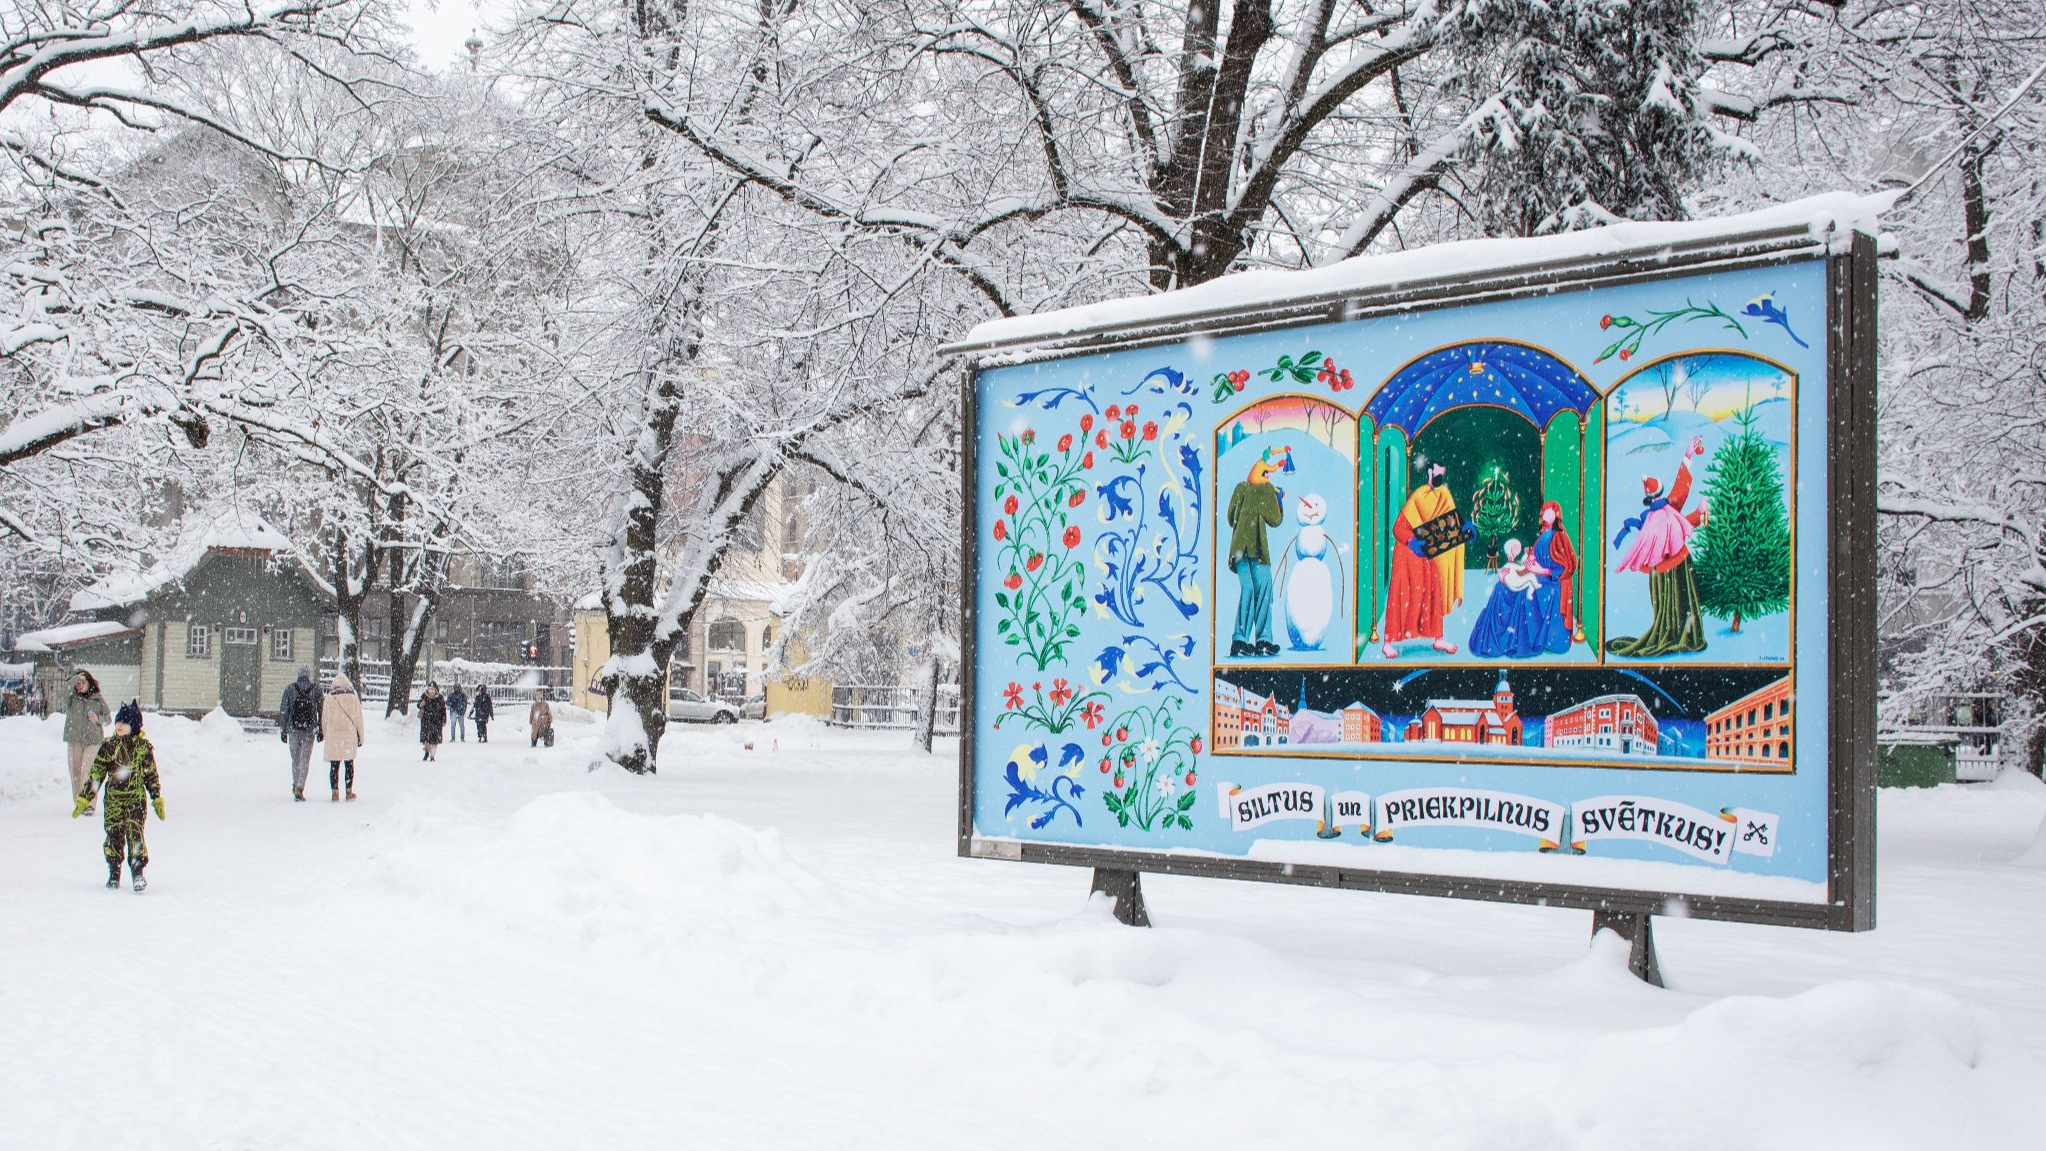 Ziemassvētku gaidīšanas laikā Rīgā aicina baudīt mazos ziemas priekus